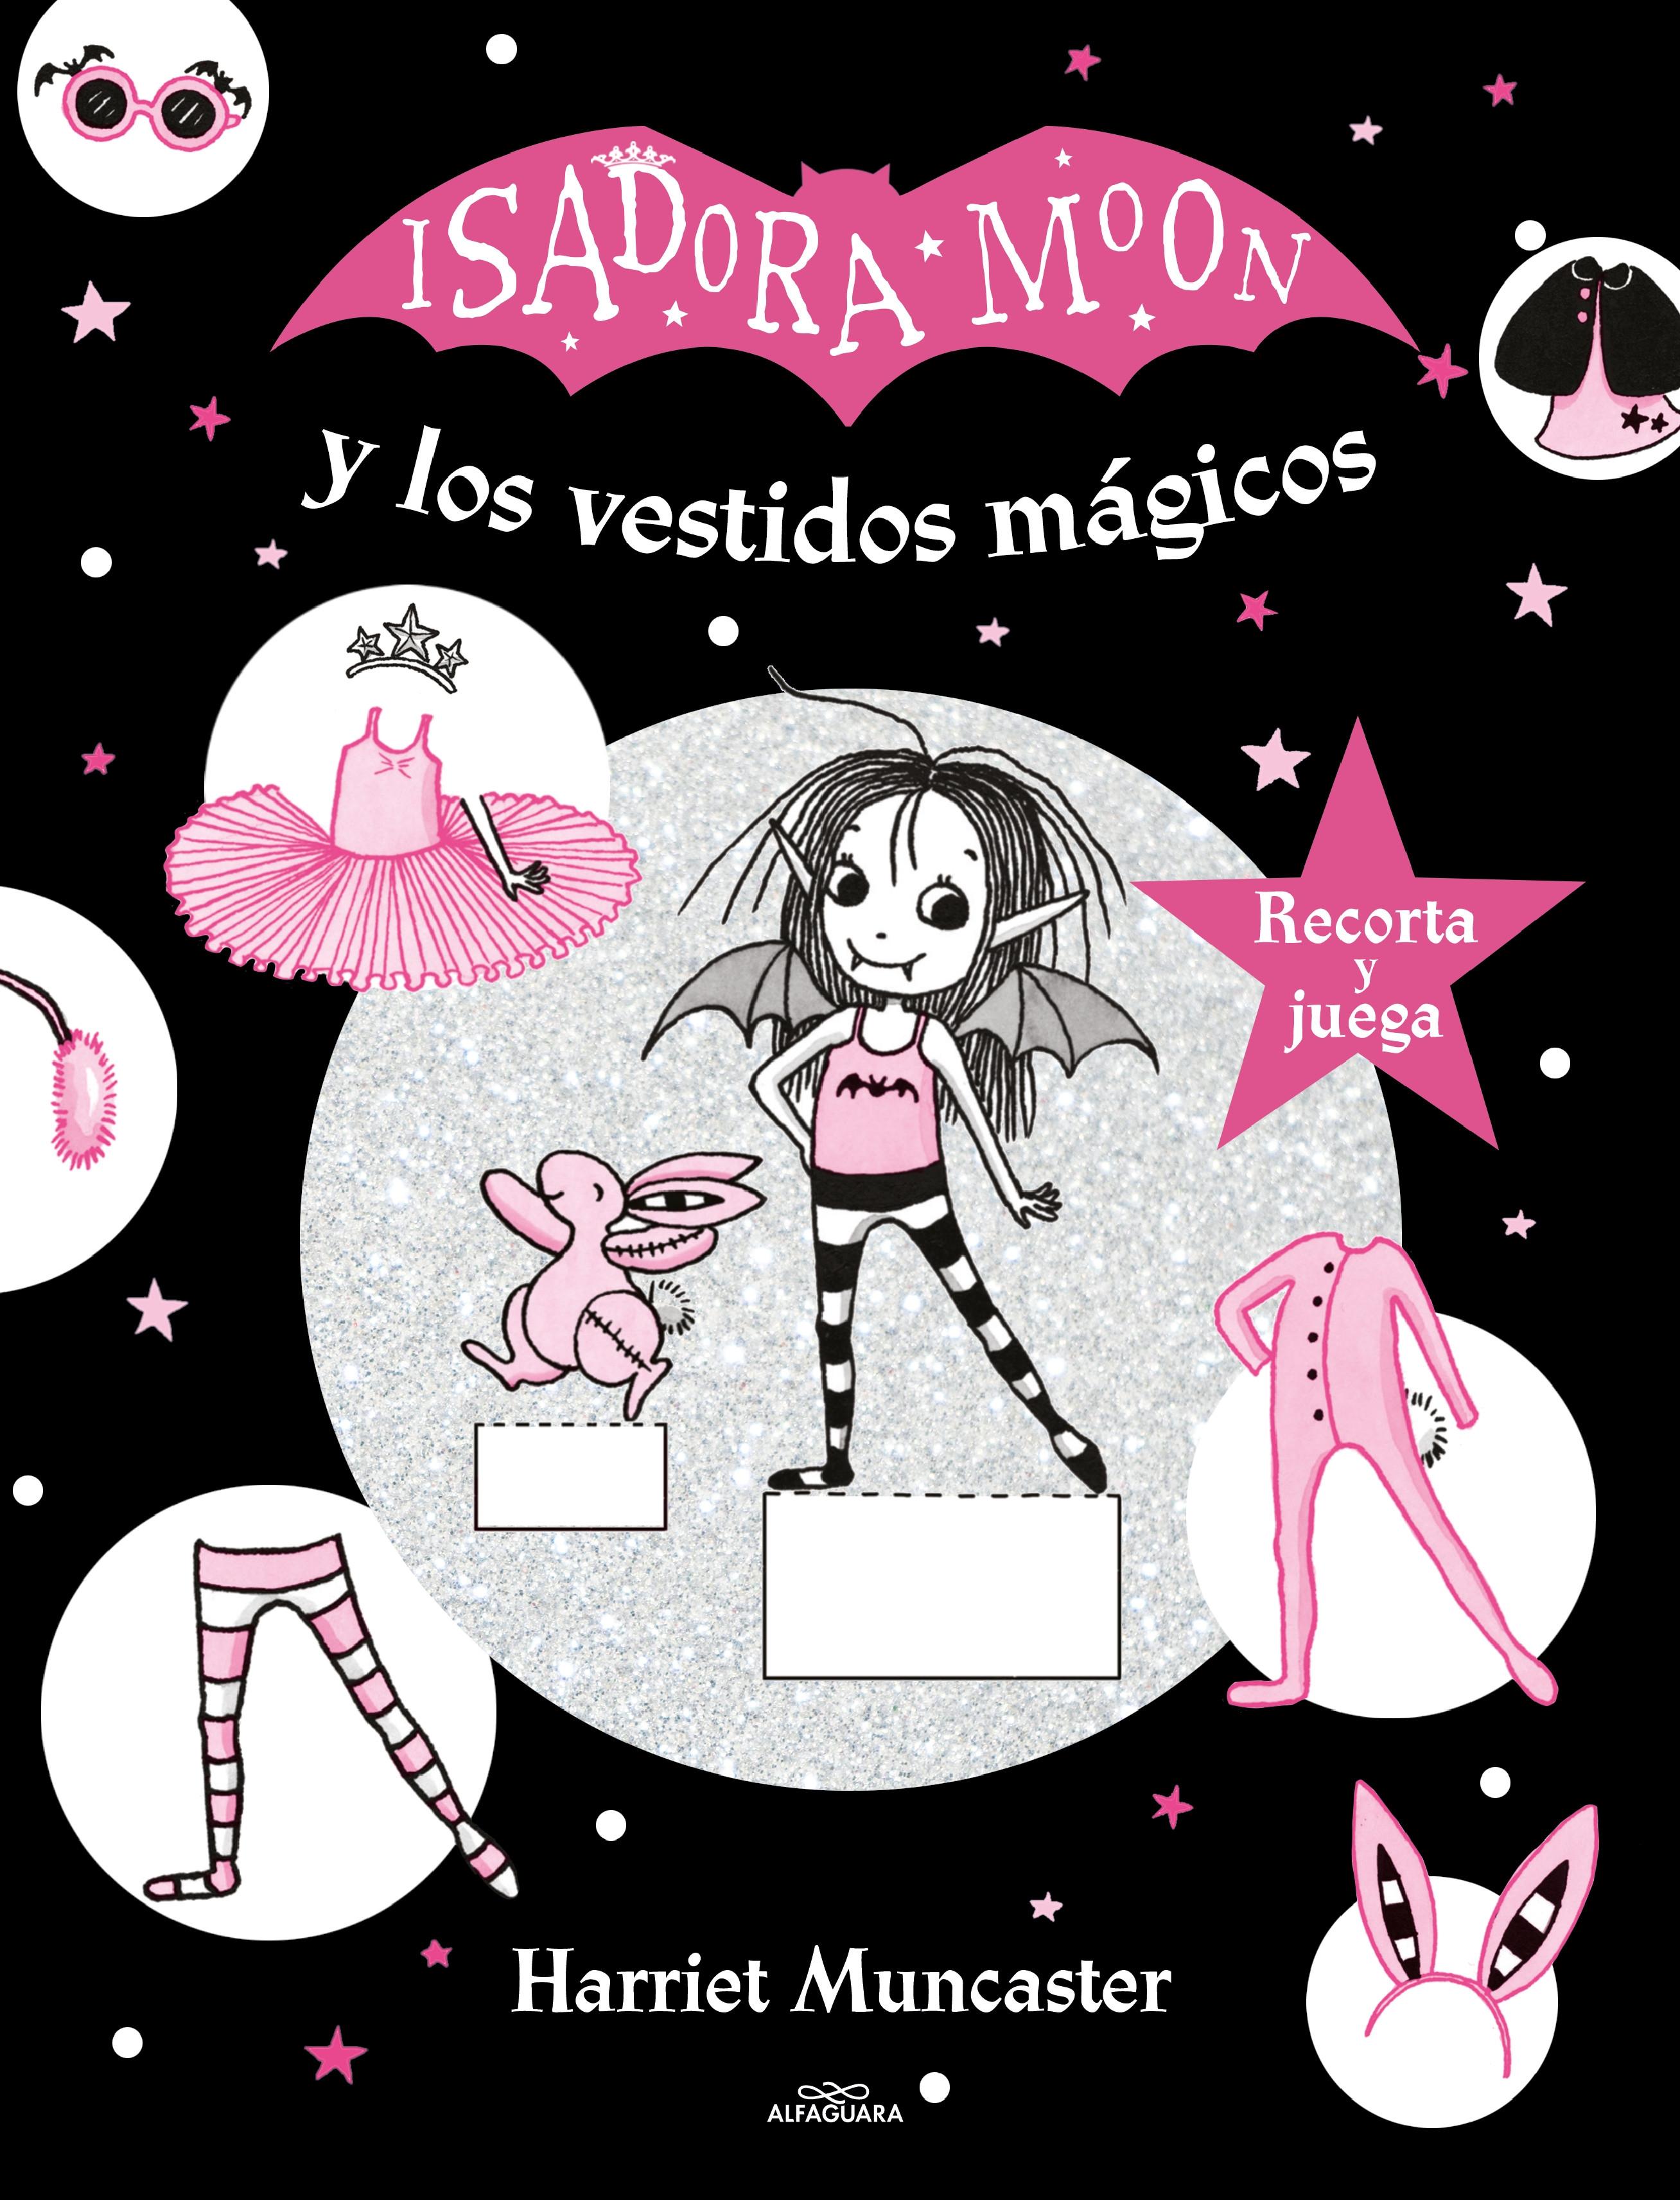 Isadora Moon y los vestidos mágicos "(Isadora Moon)". 